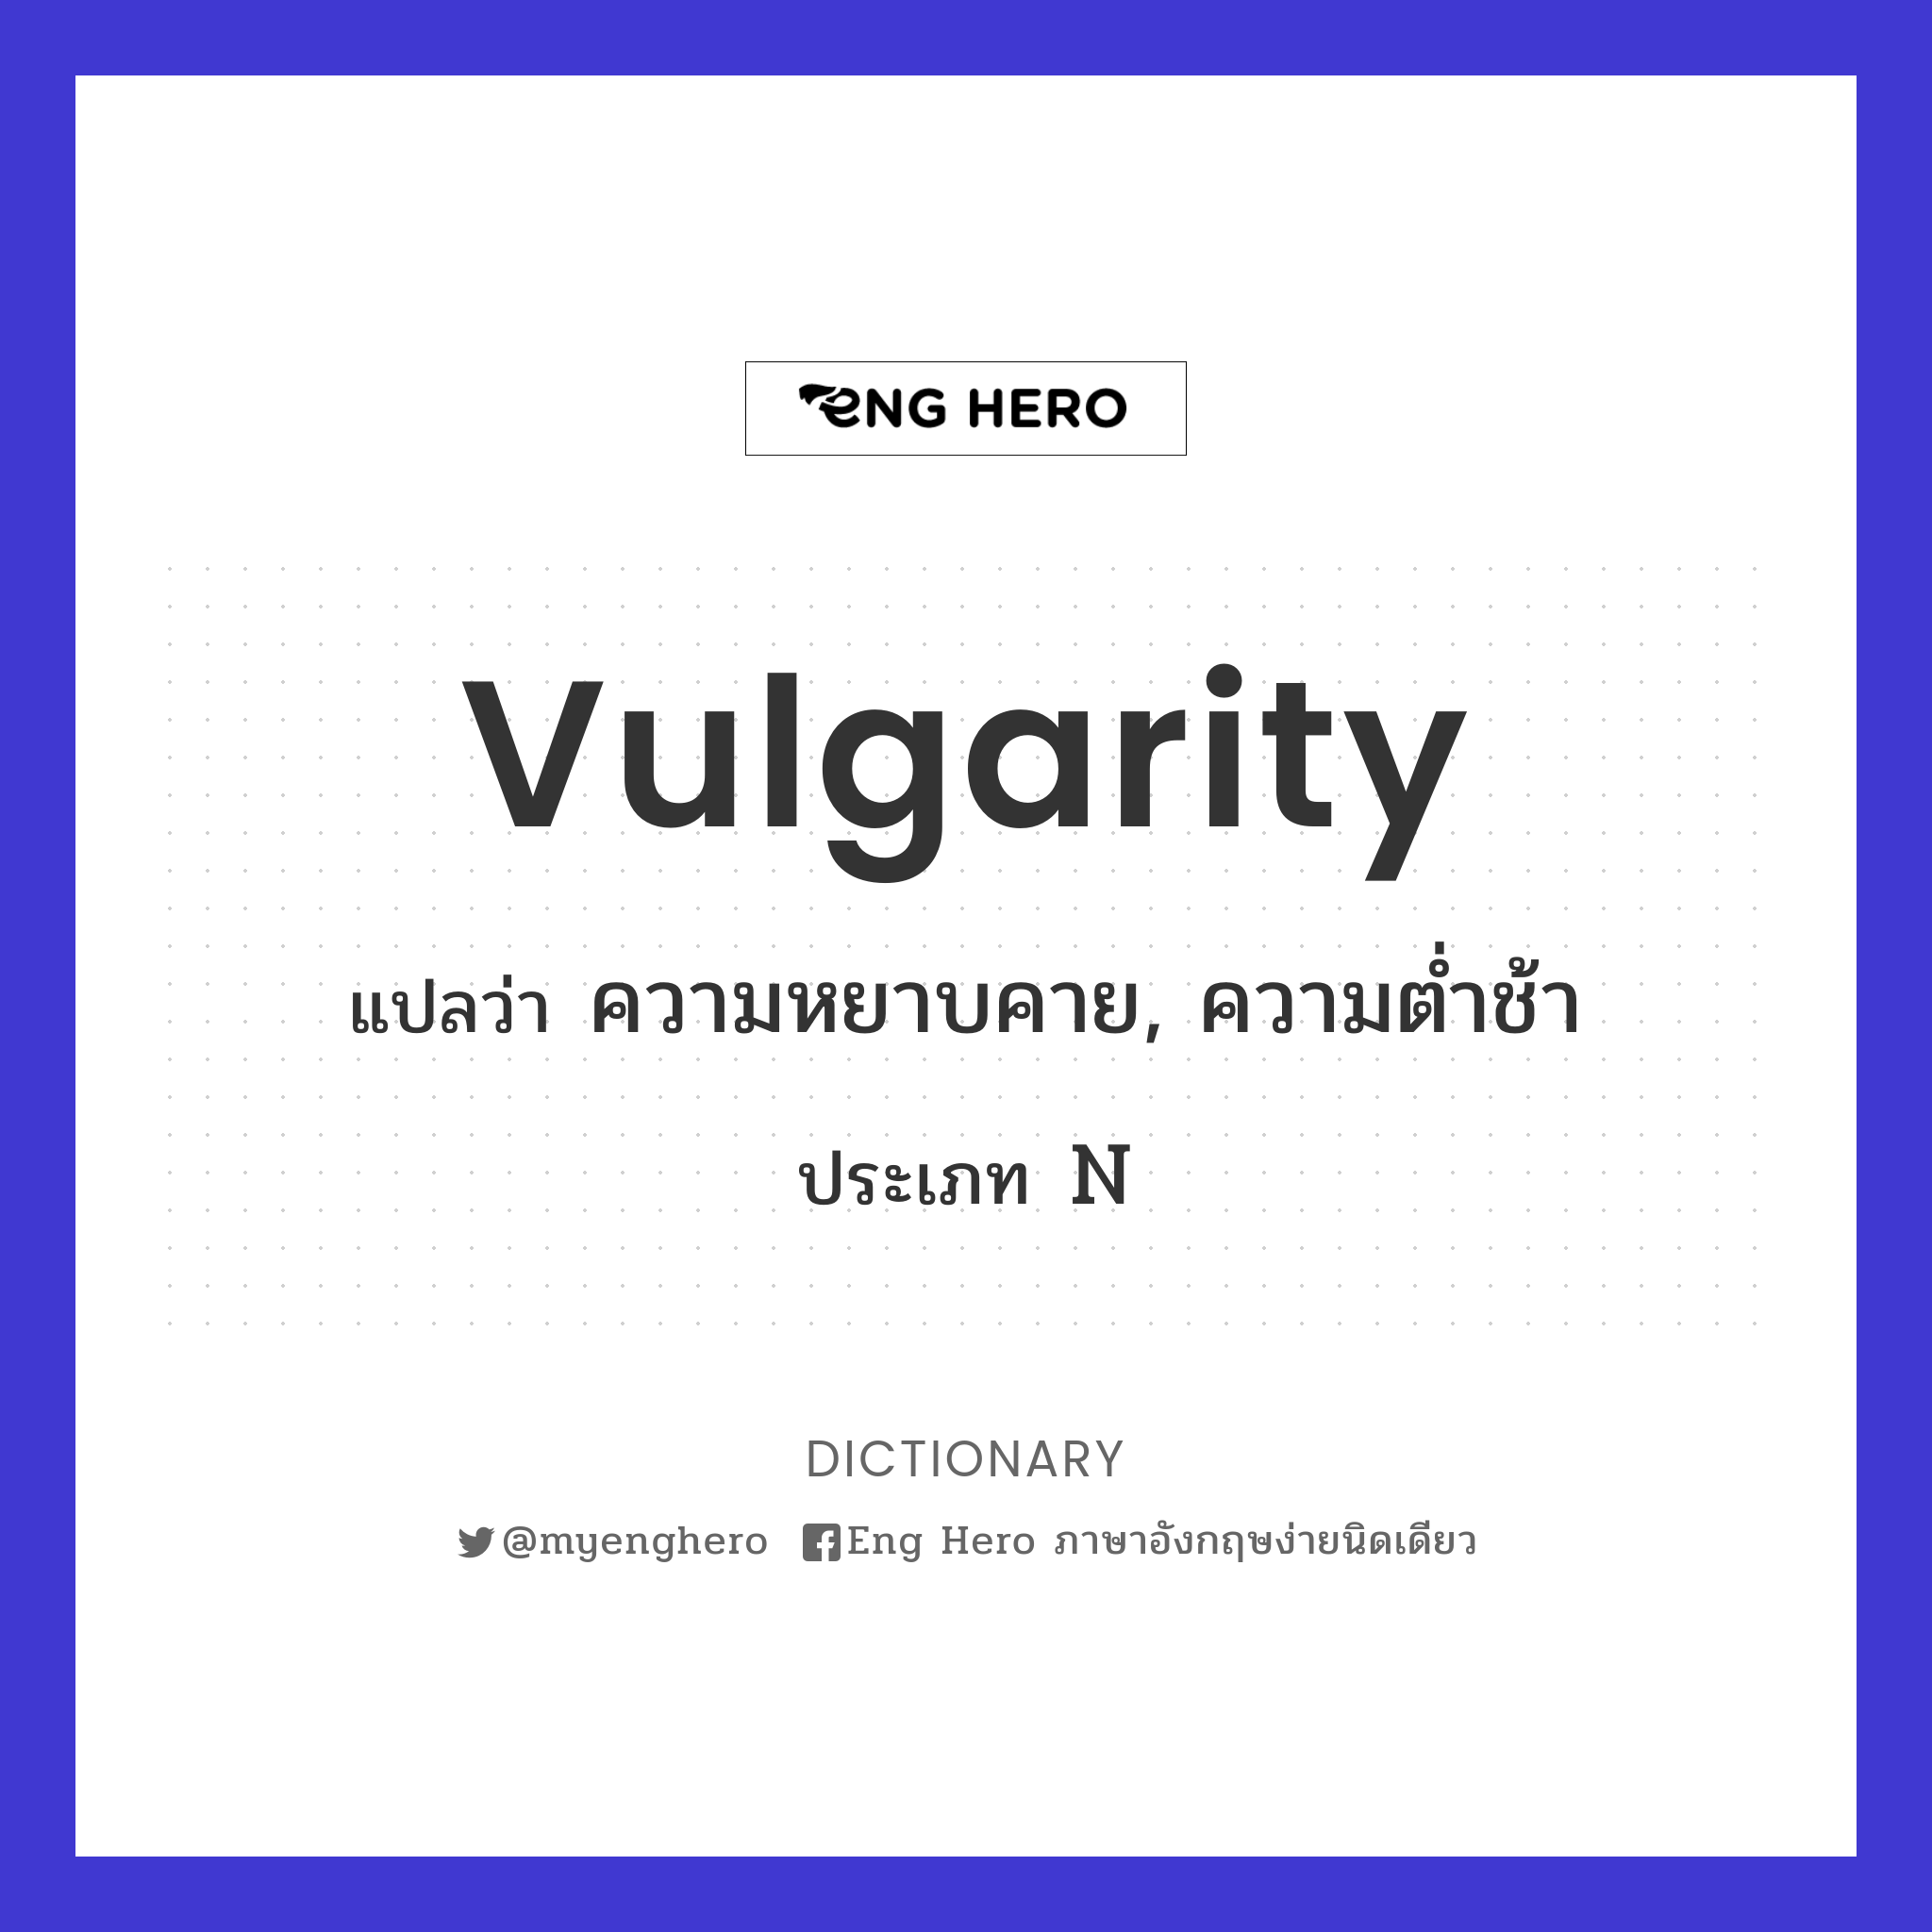 vulgarity